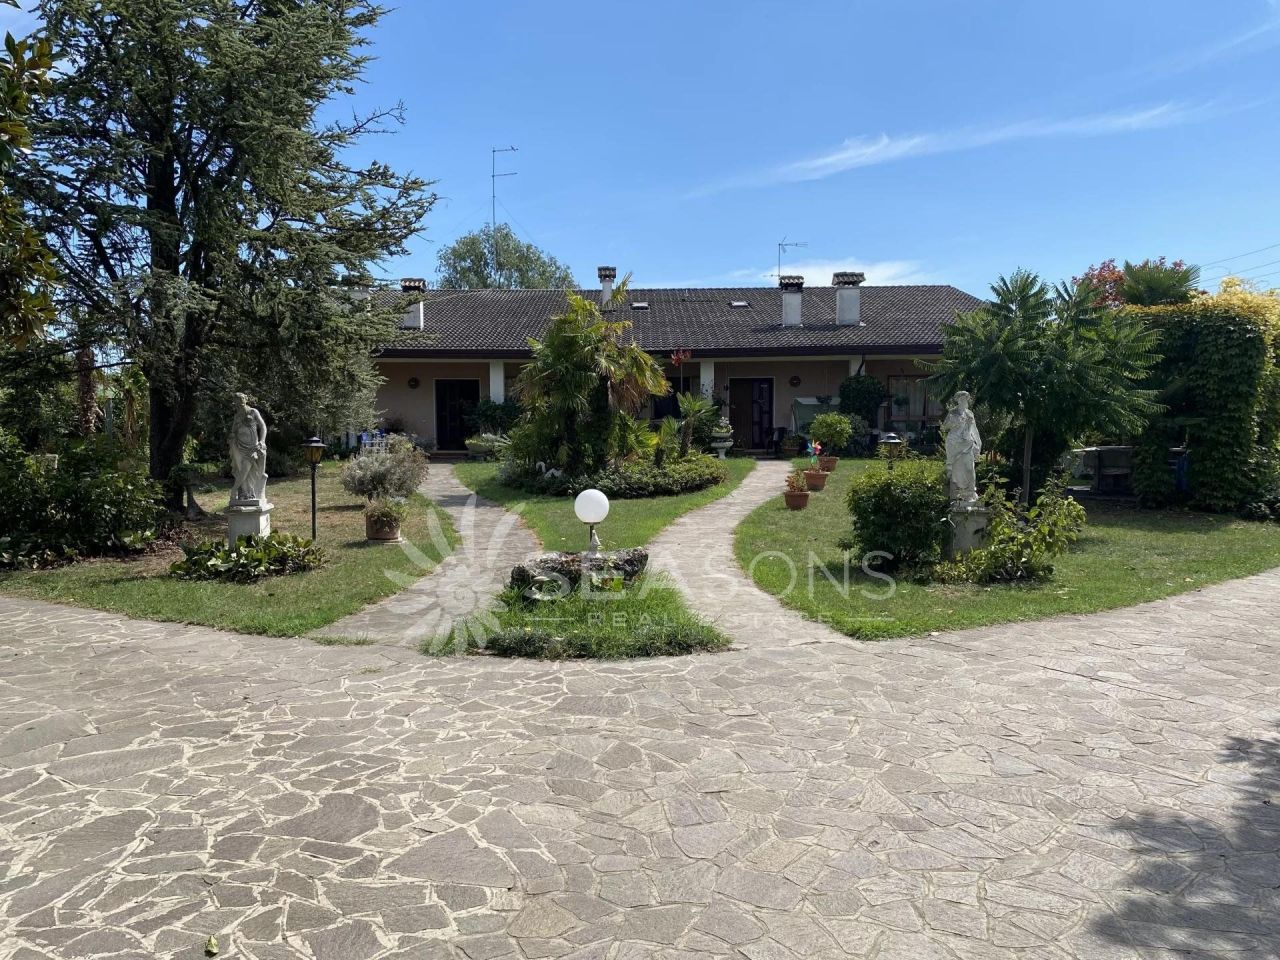 Villa in Caorle, Italien, 3 500 m2 - Foto 1